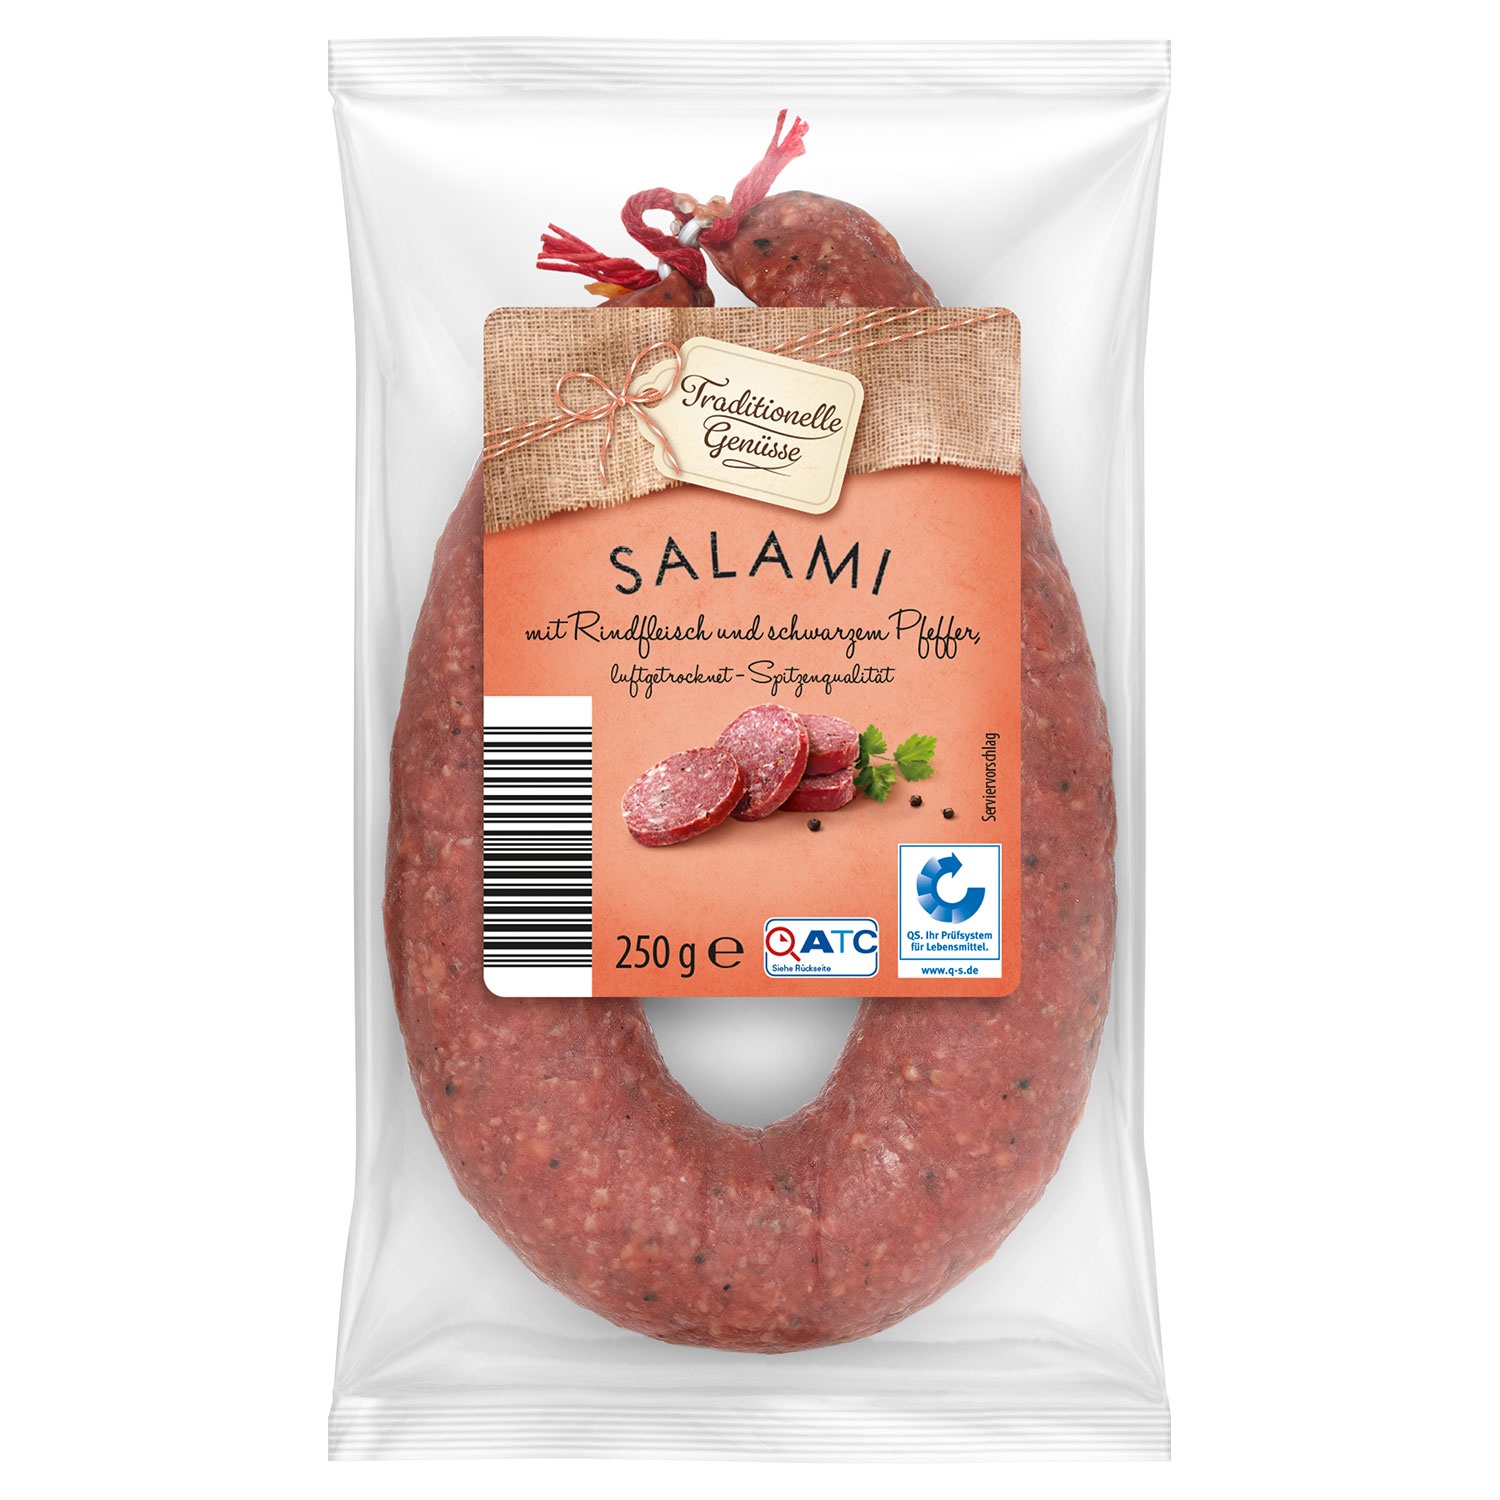 TRADITIONELLE GENÜSSE Salami-Spezialität 250 g